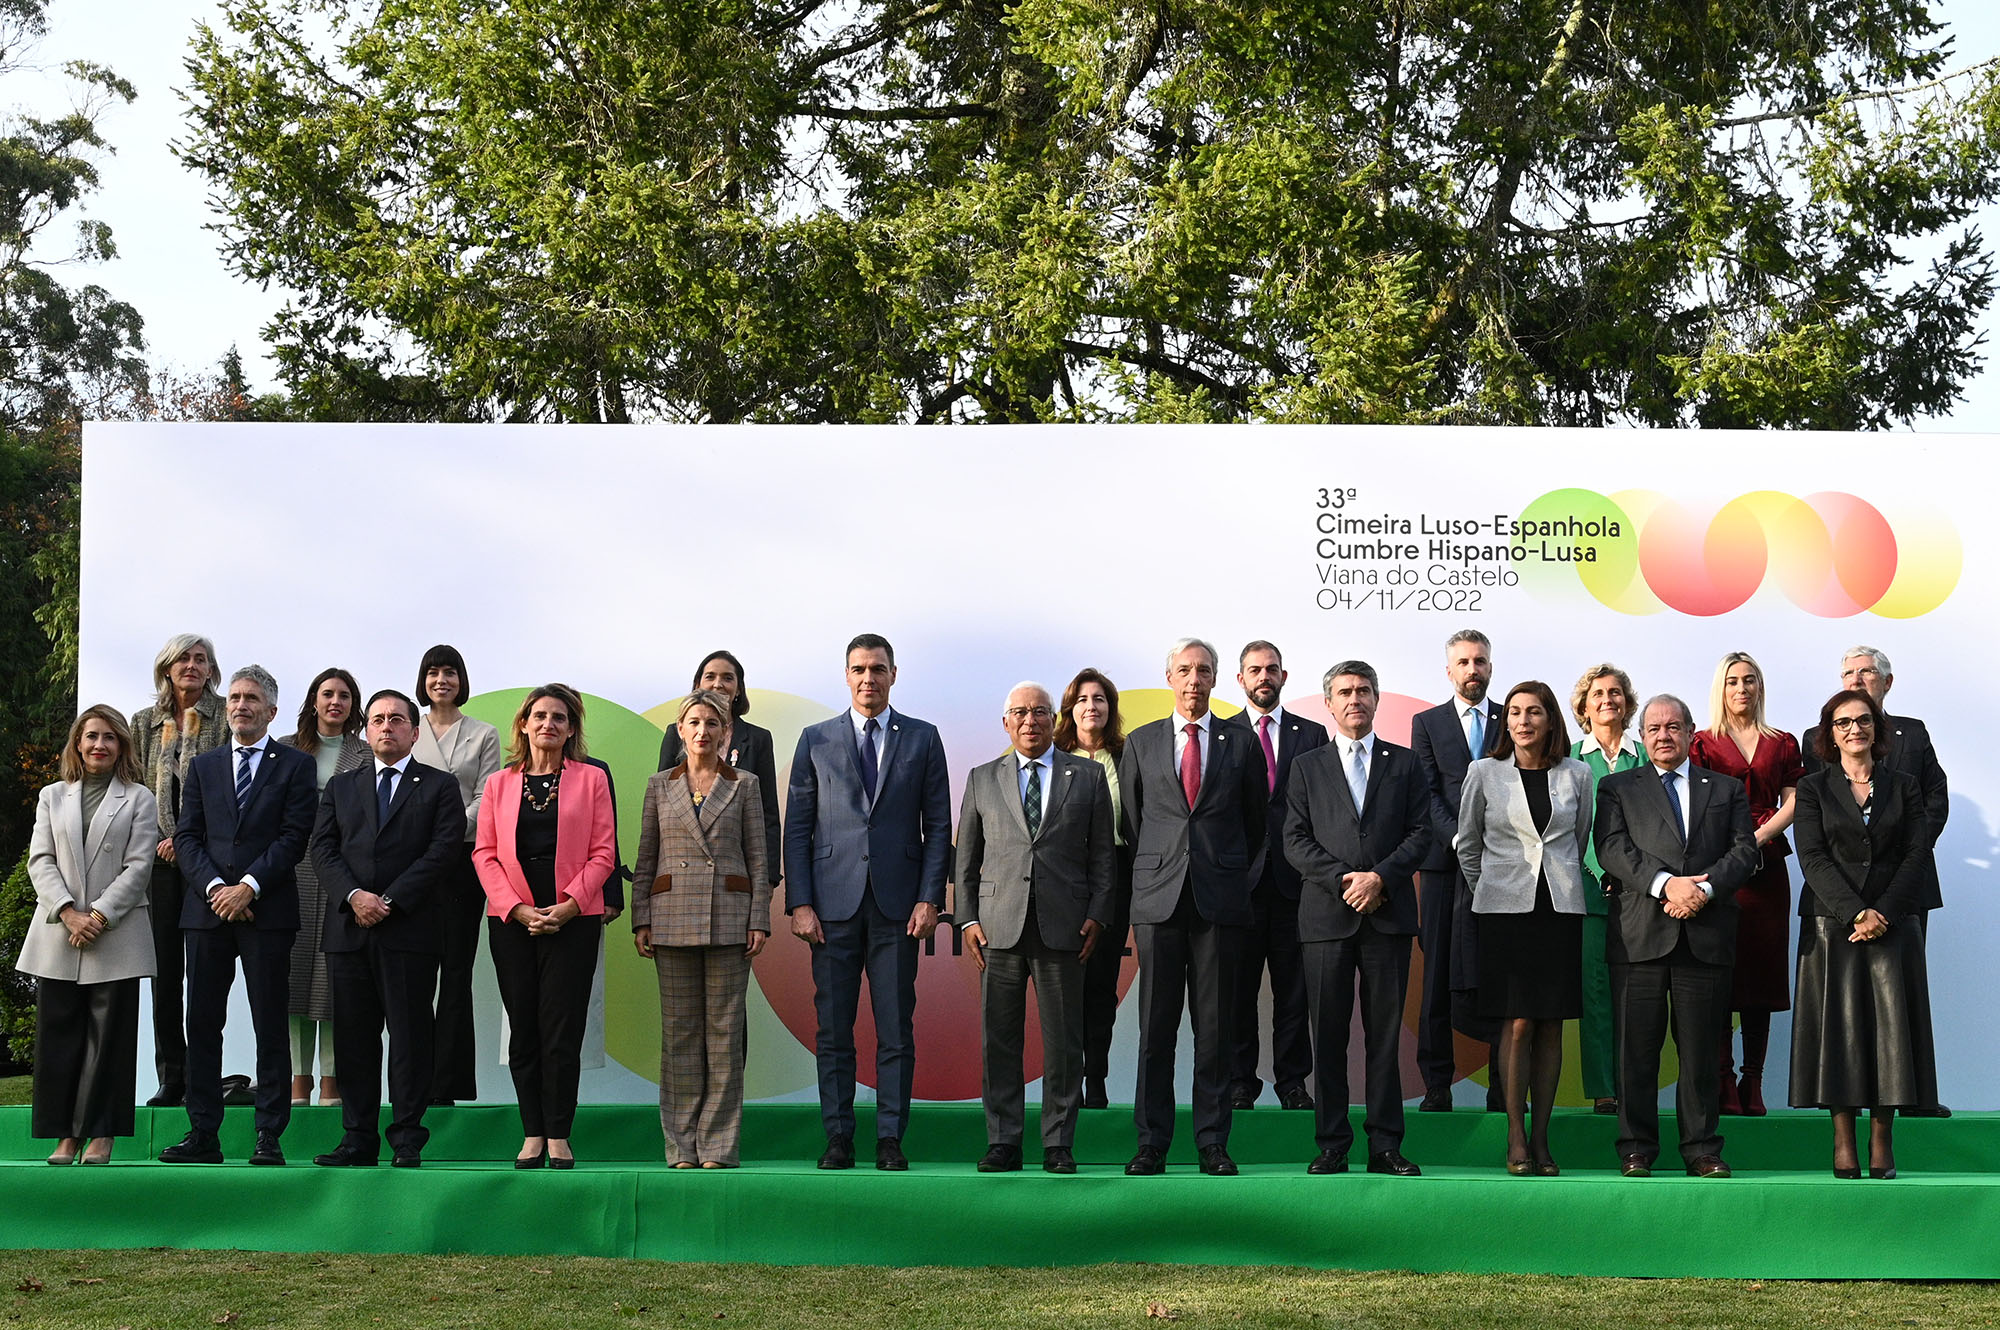 Foto de familia de los miembros de los gobiernos español y portugués participantes en la Cumbre hispano-lusa